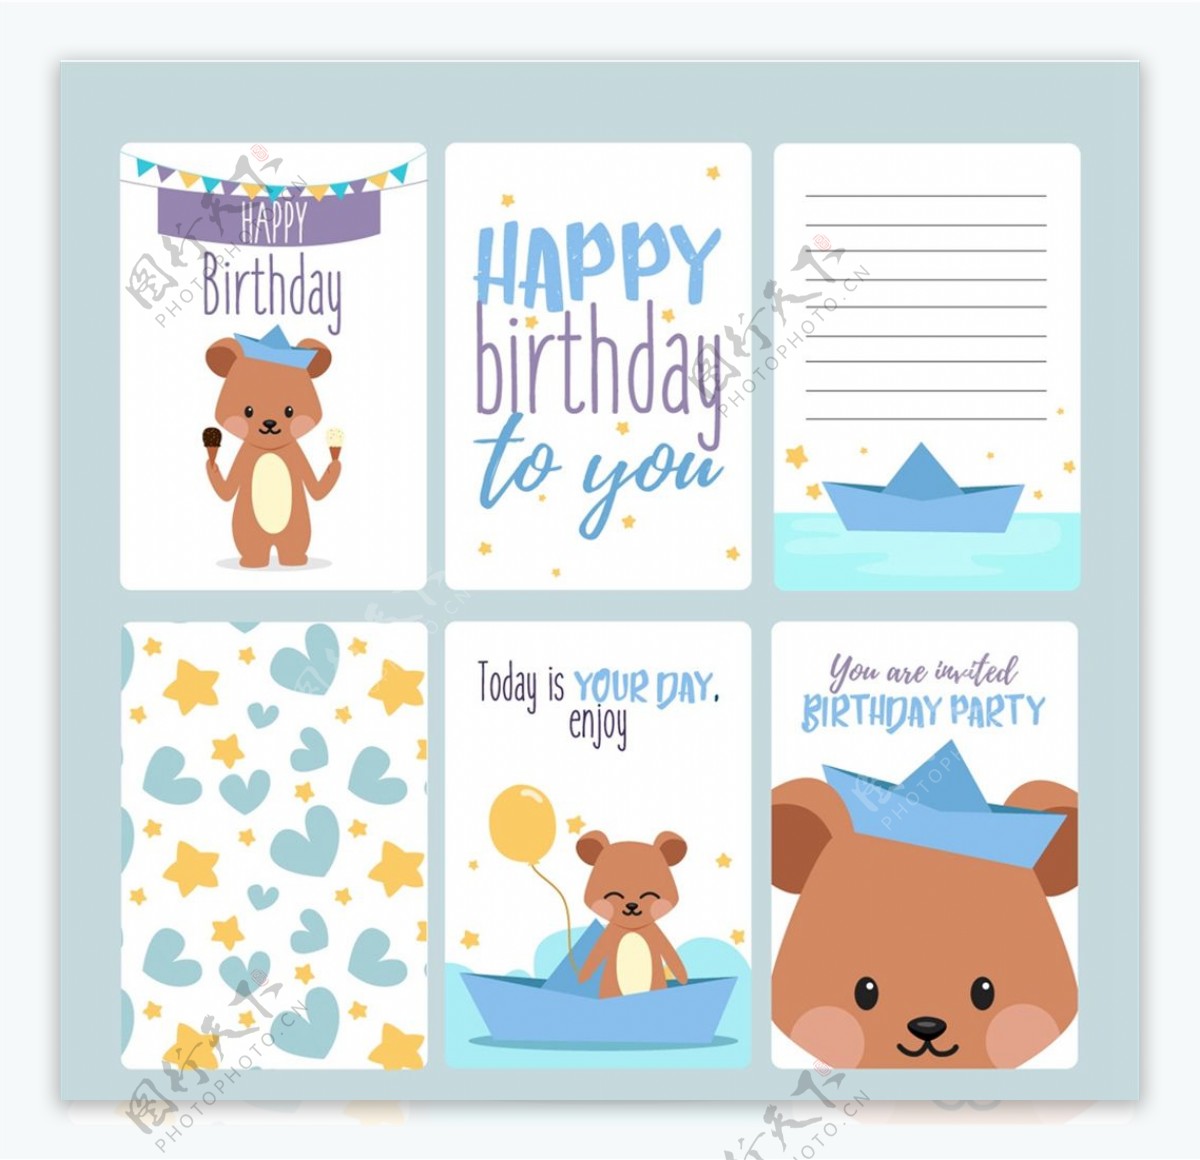 可爱熊生日卡片图片